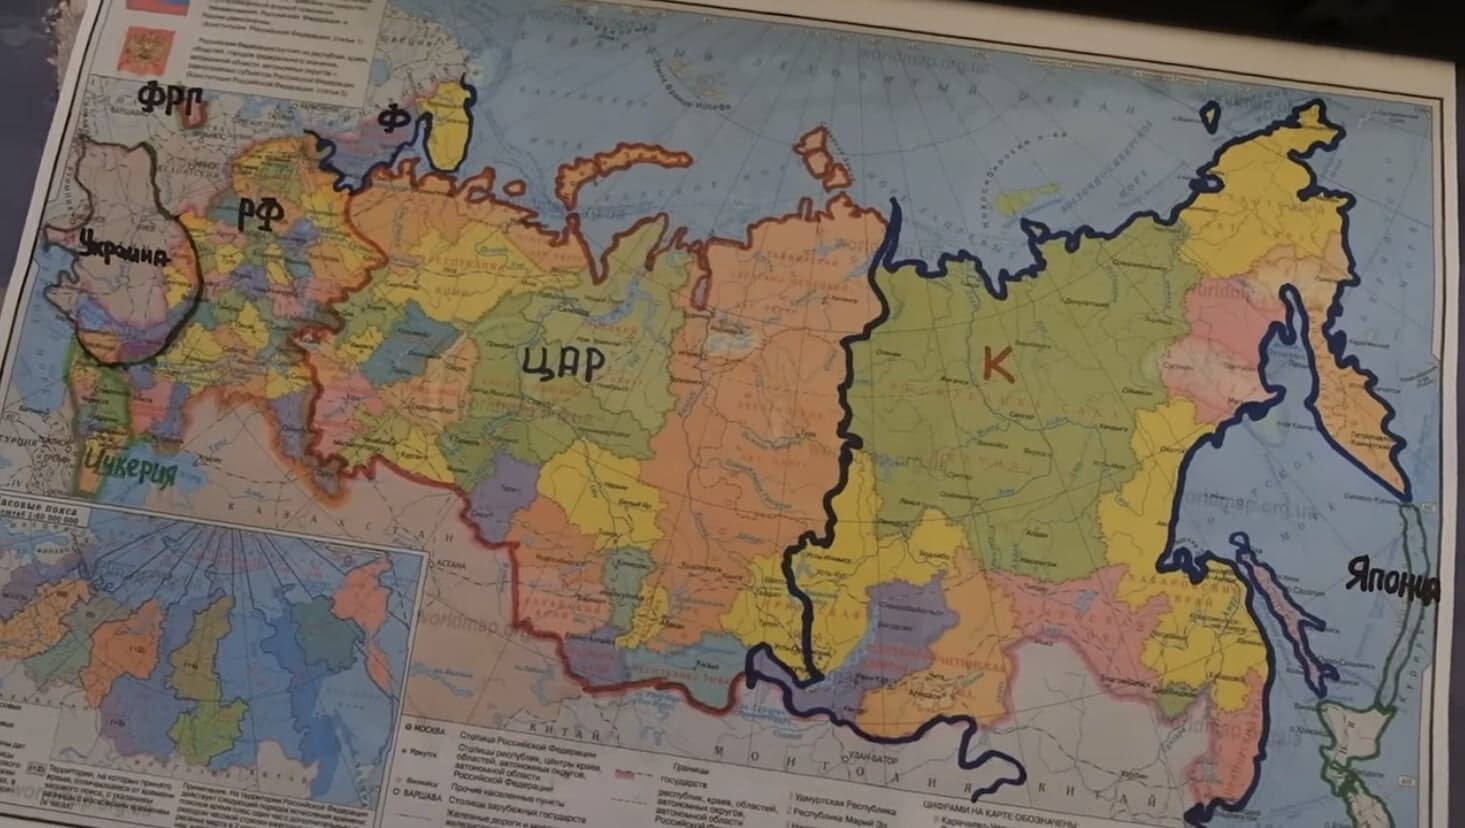 "Смертельно небезпечна річ": на росТБ стривожилися через карту з "розчленованою" Росією в кабінеті Буданова. Відео 